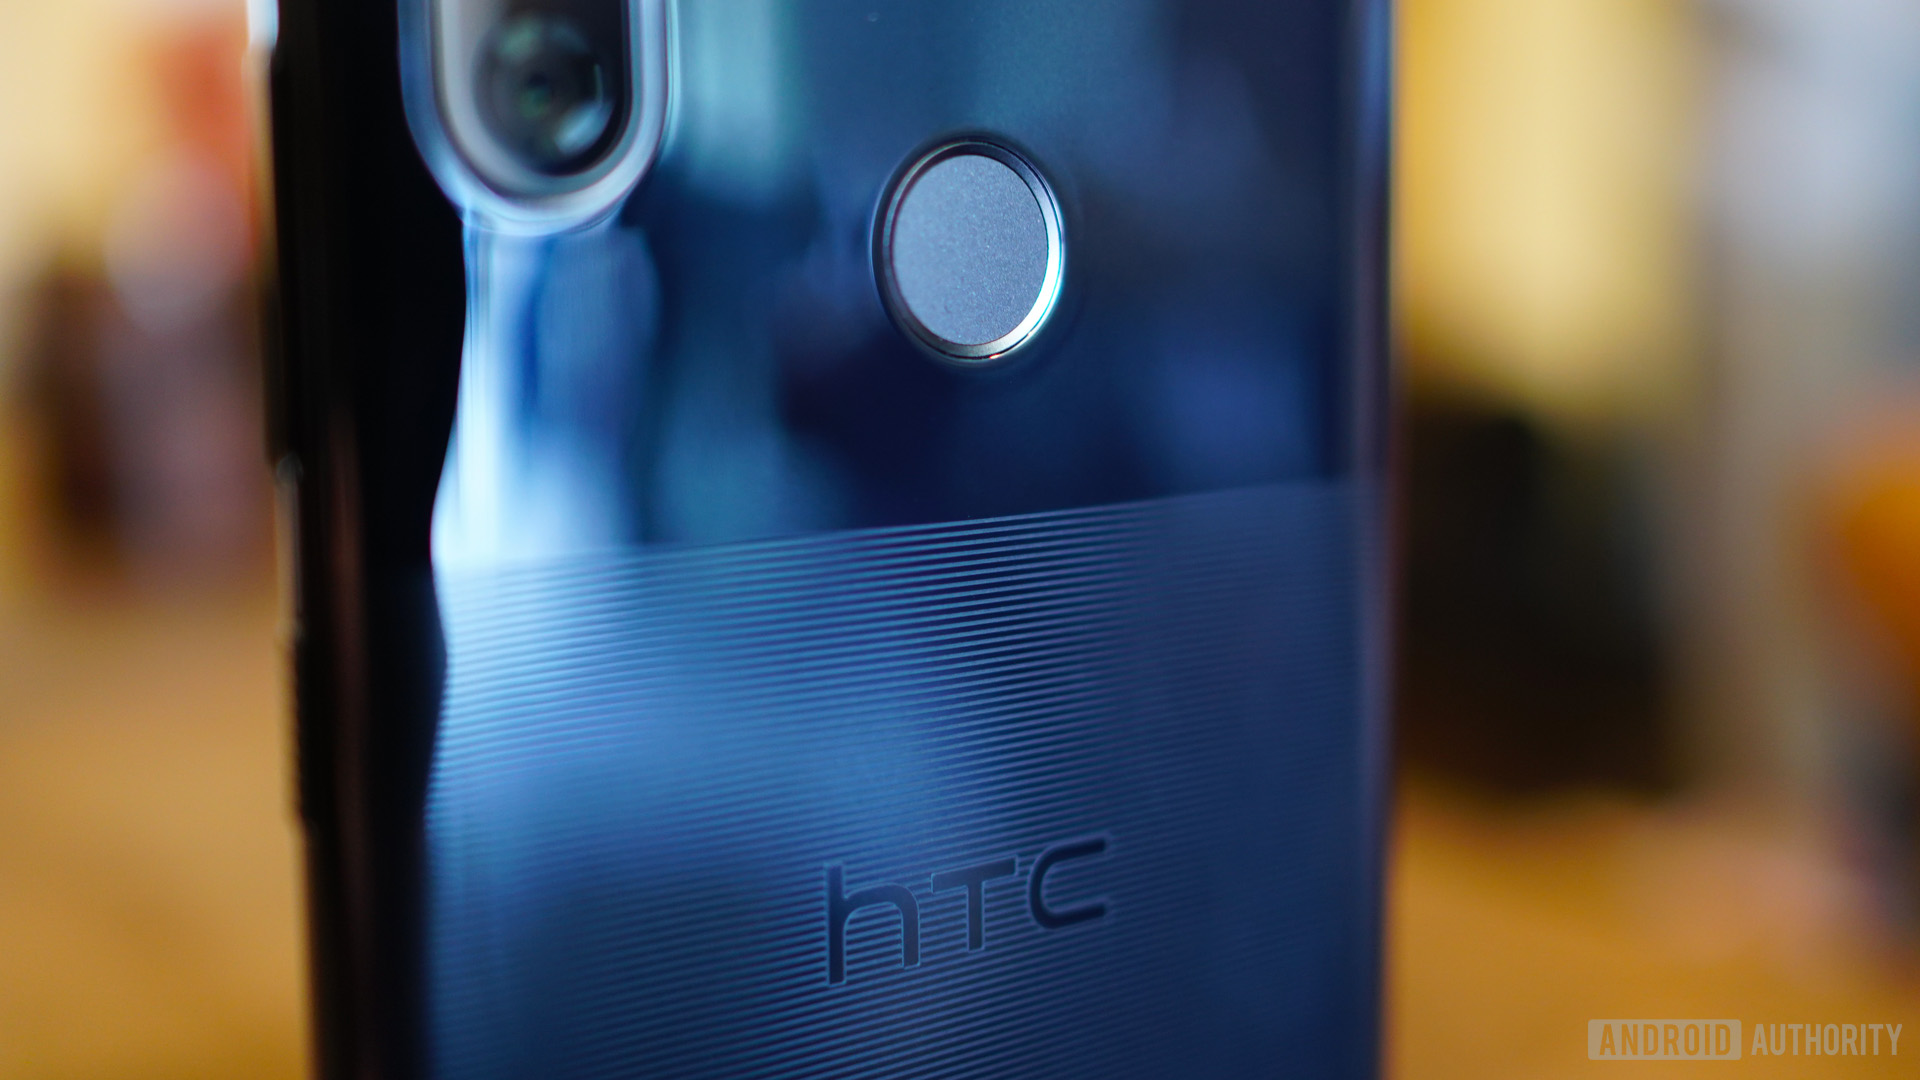 HTC U12 Life etched acrylic design logo and fingerprint scanner